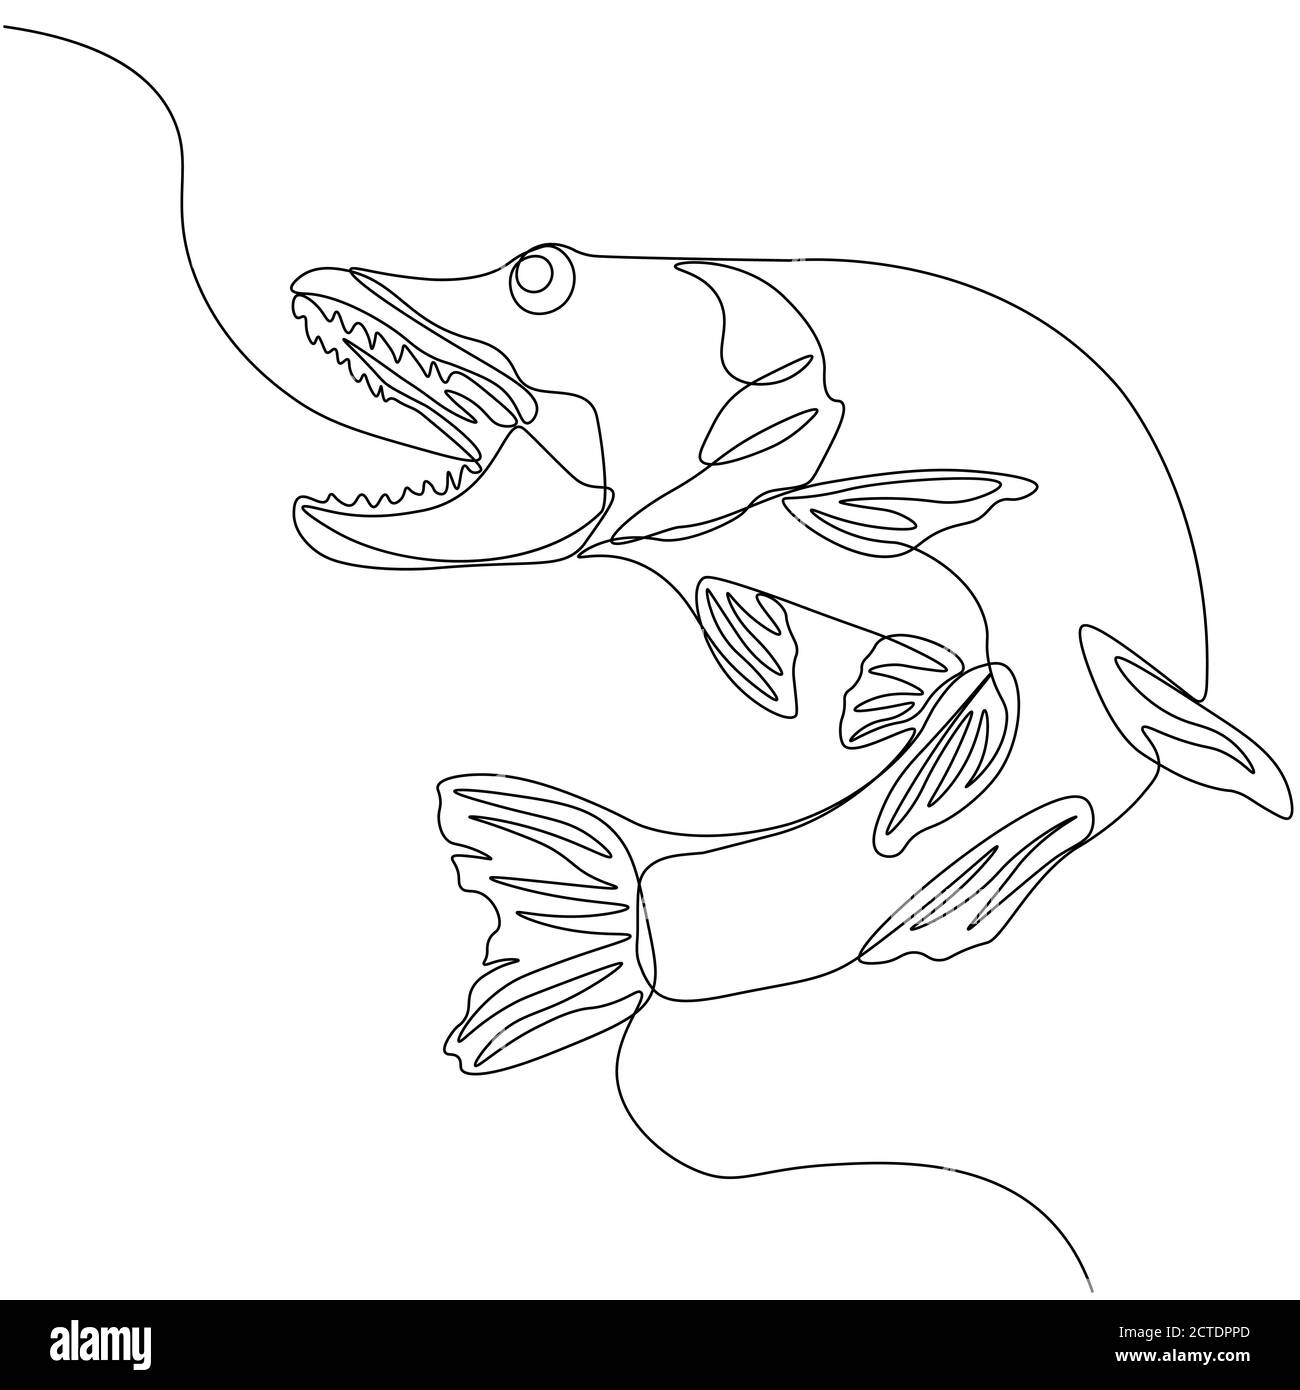 Hecht. Eine Linie Fisch-Design Silhouette. Logo-Design. Handgezeichnete Vektorgrafik im Minimalismus-Stil. Stock Vektor